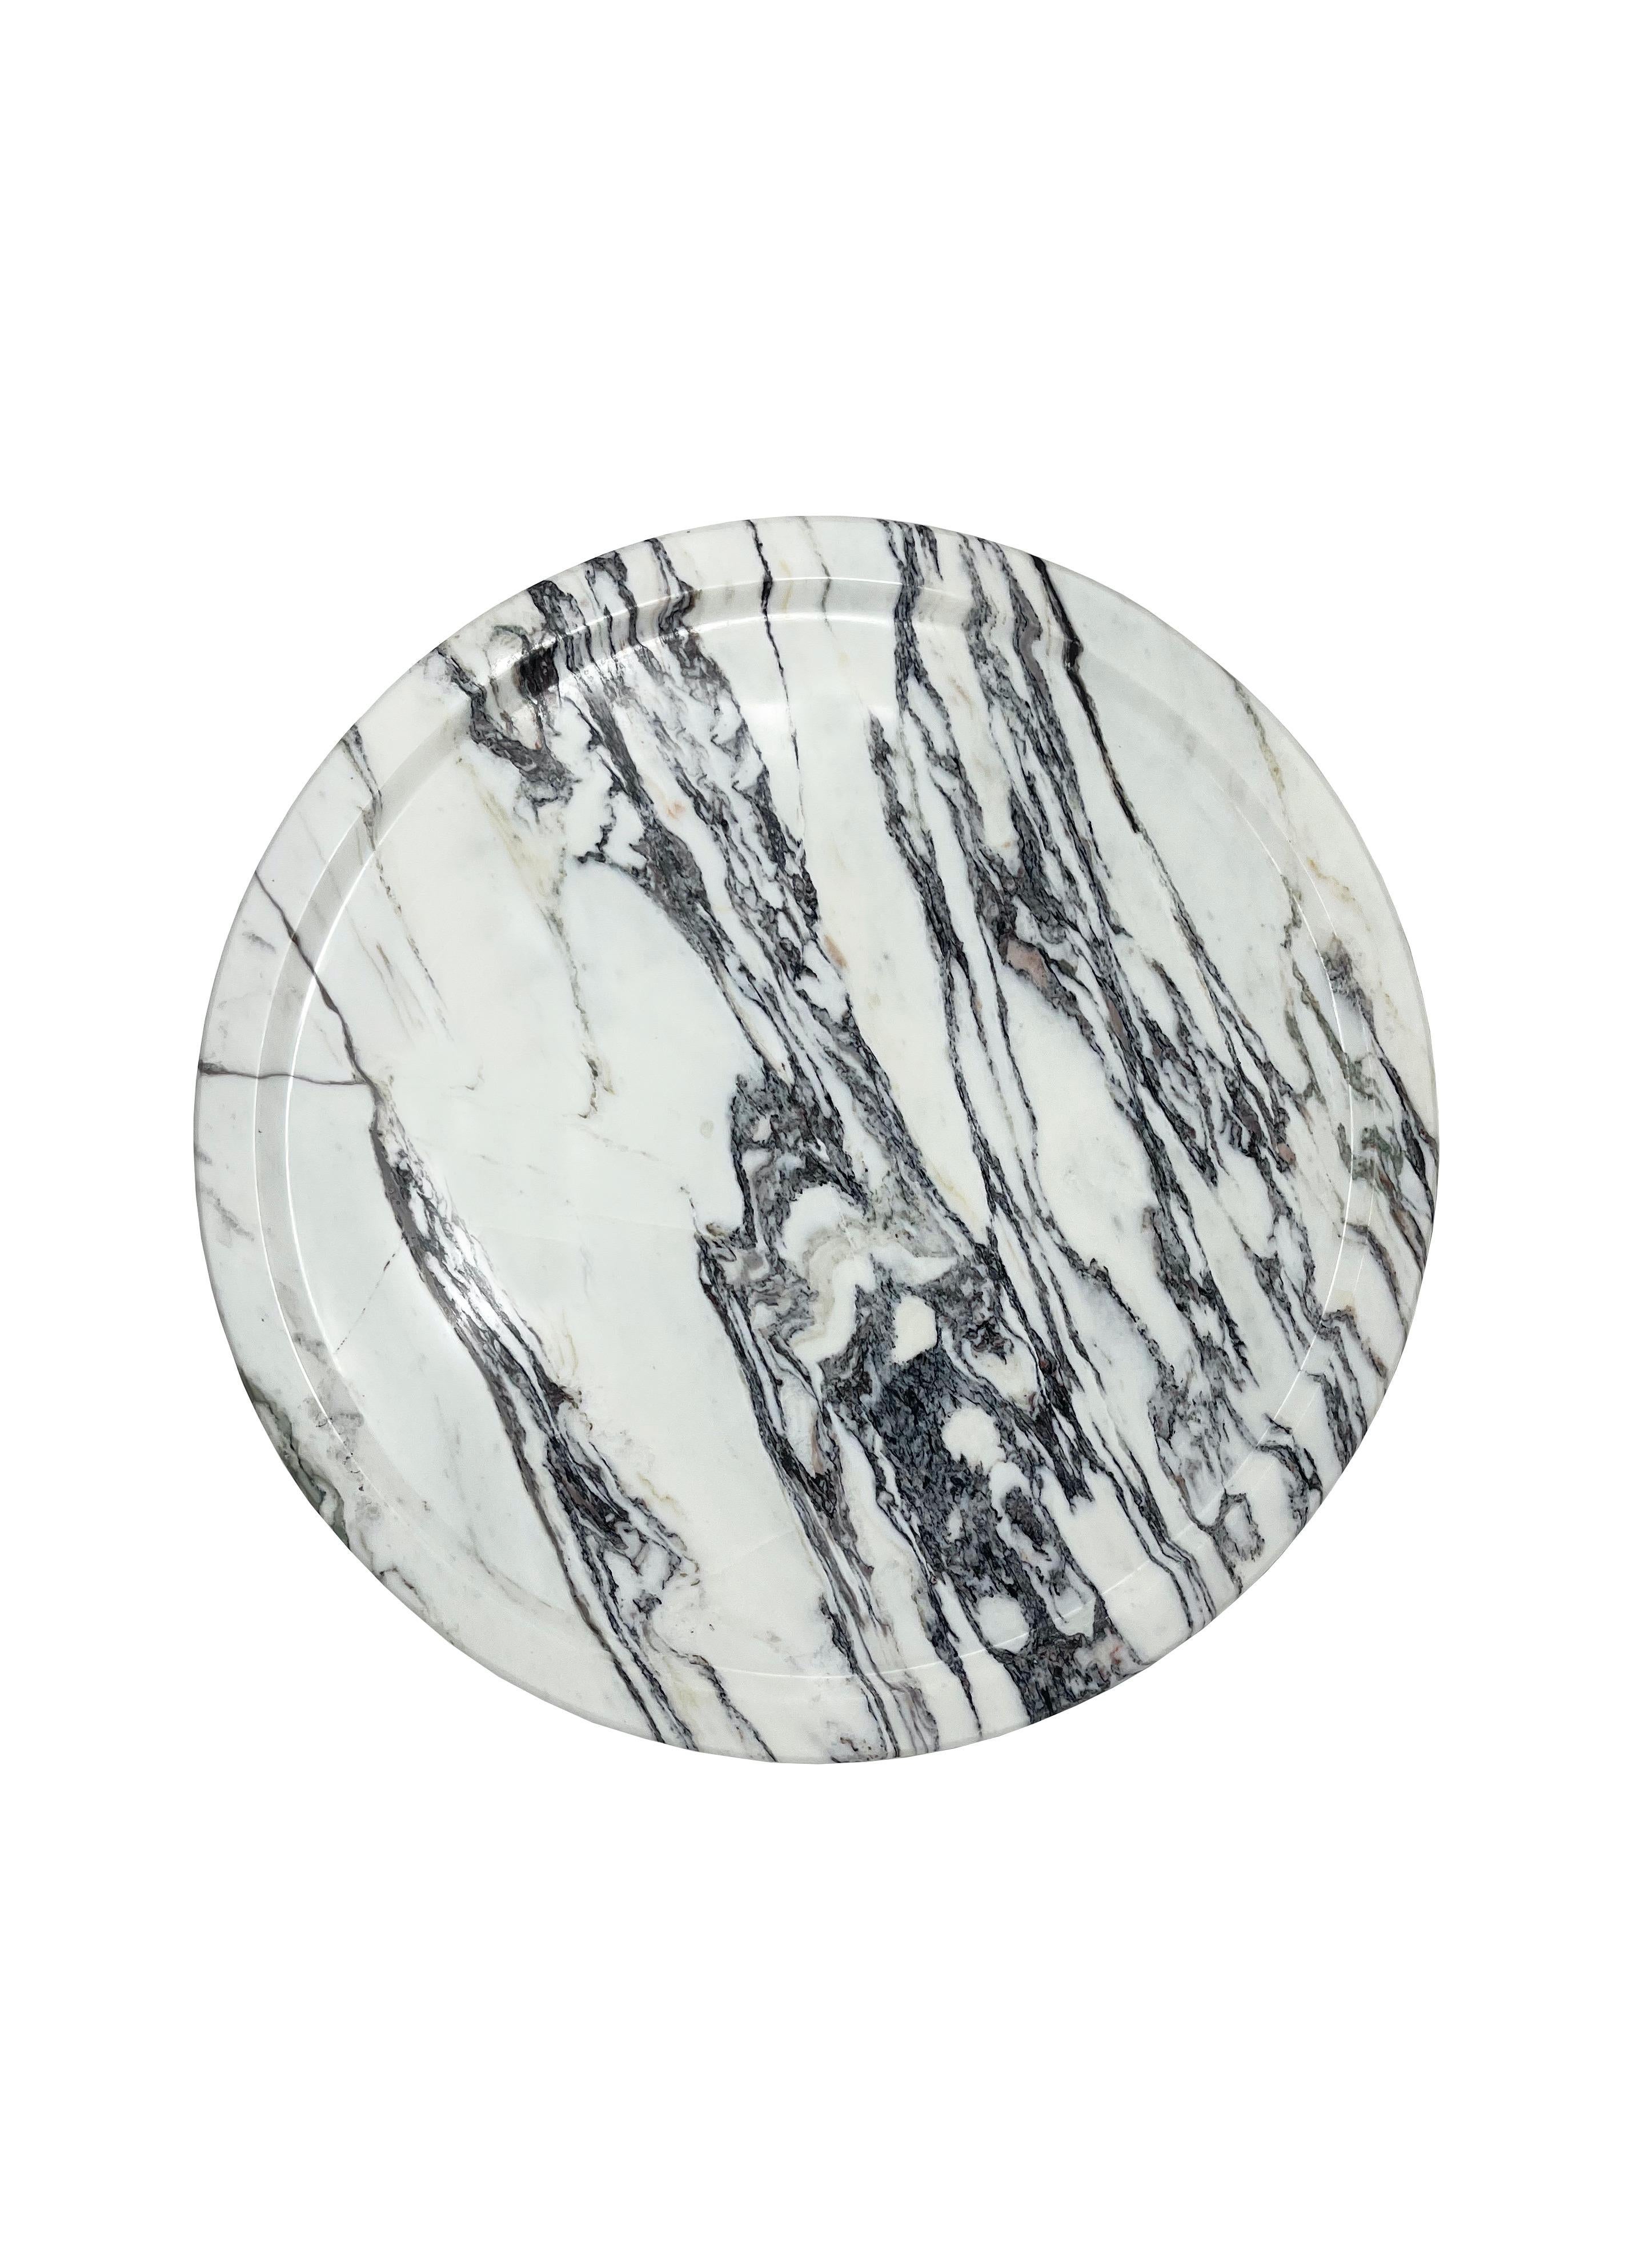 Aus einem einzigen runden Stück Marmor gefertigt, ist Acqua ein moderner, eleganter und raffinierter Tafelaufsatz. Das Marmortablett Acqua ist perfekt für den Esstisch, die Küchenarbeitsplatte oder den Couchtisch.

Acqua kann auch als Servierplatte